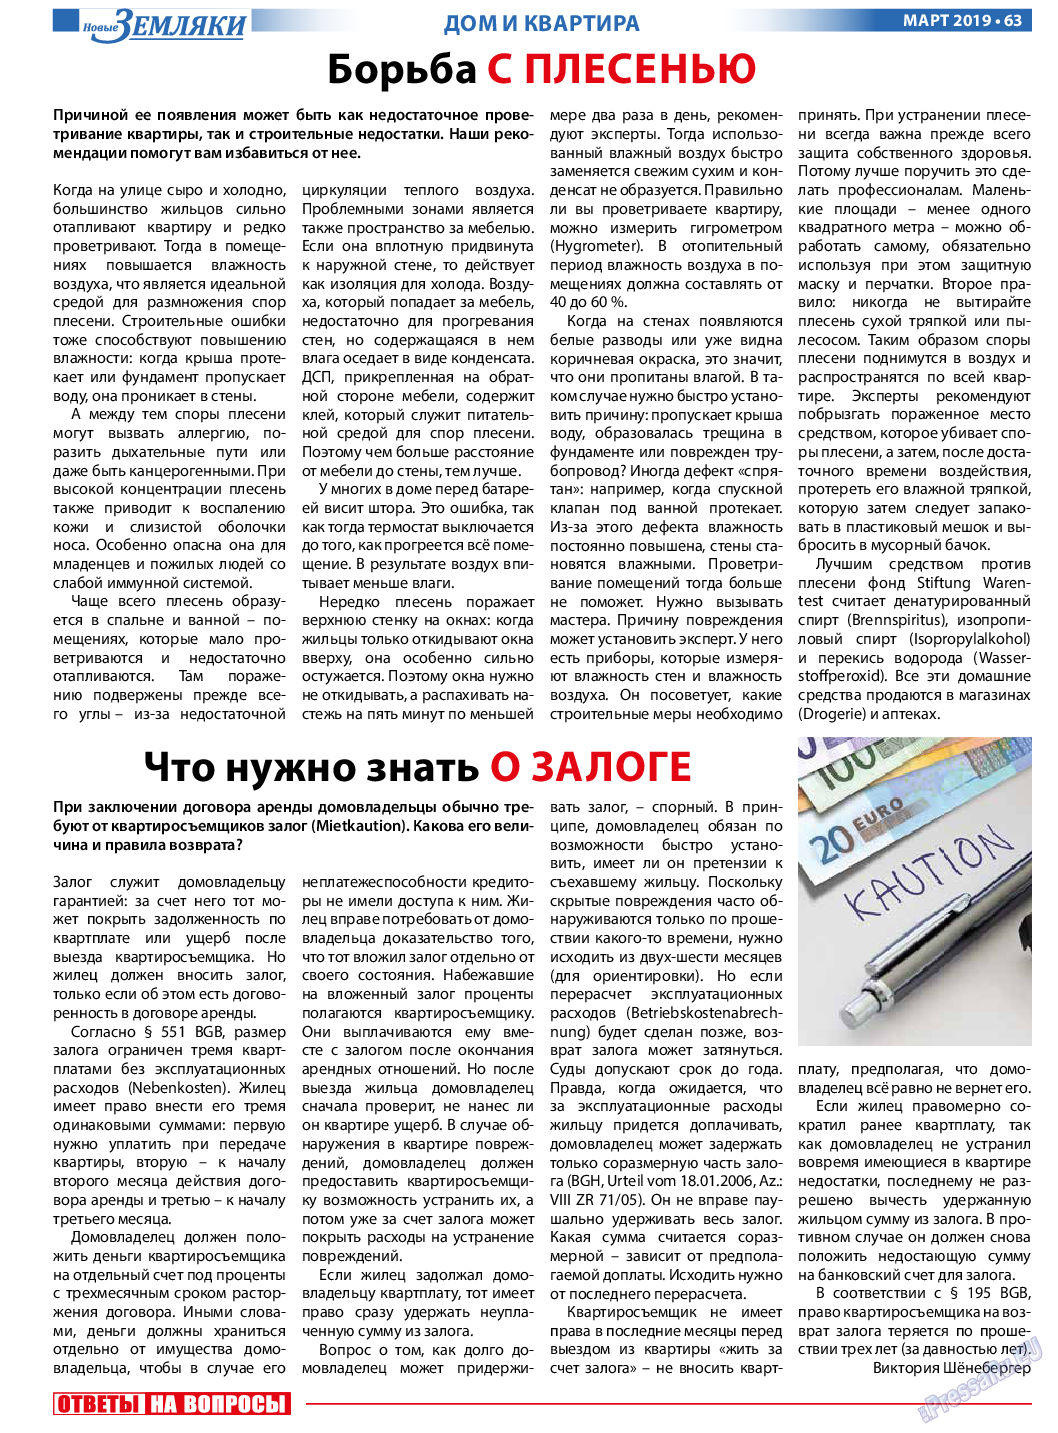 Новые Земляки (газета). 2019 год, номер 3, стр. 63